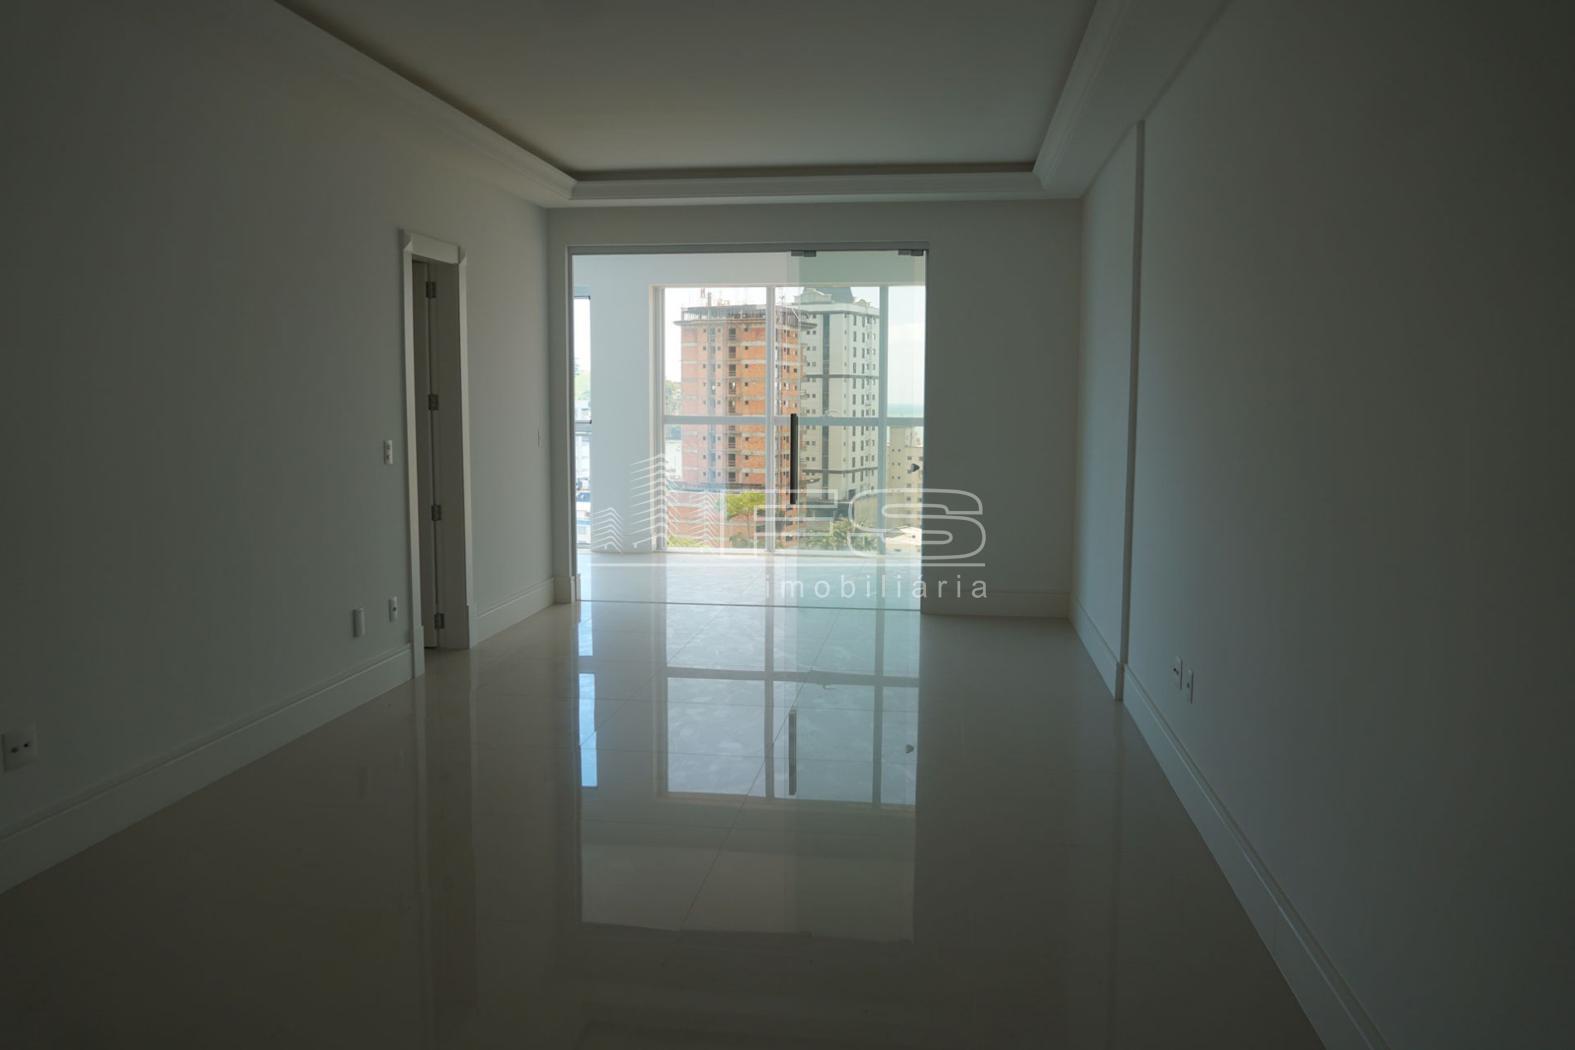 Apartamento com 3 Dormitórios à venda, 140 m² por R$ 1.650.000,00